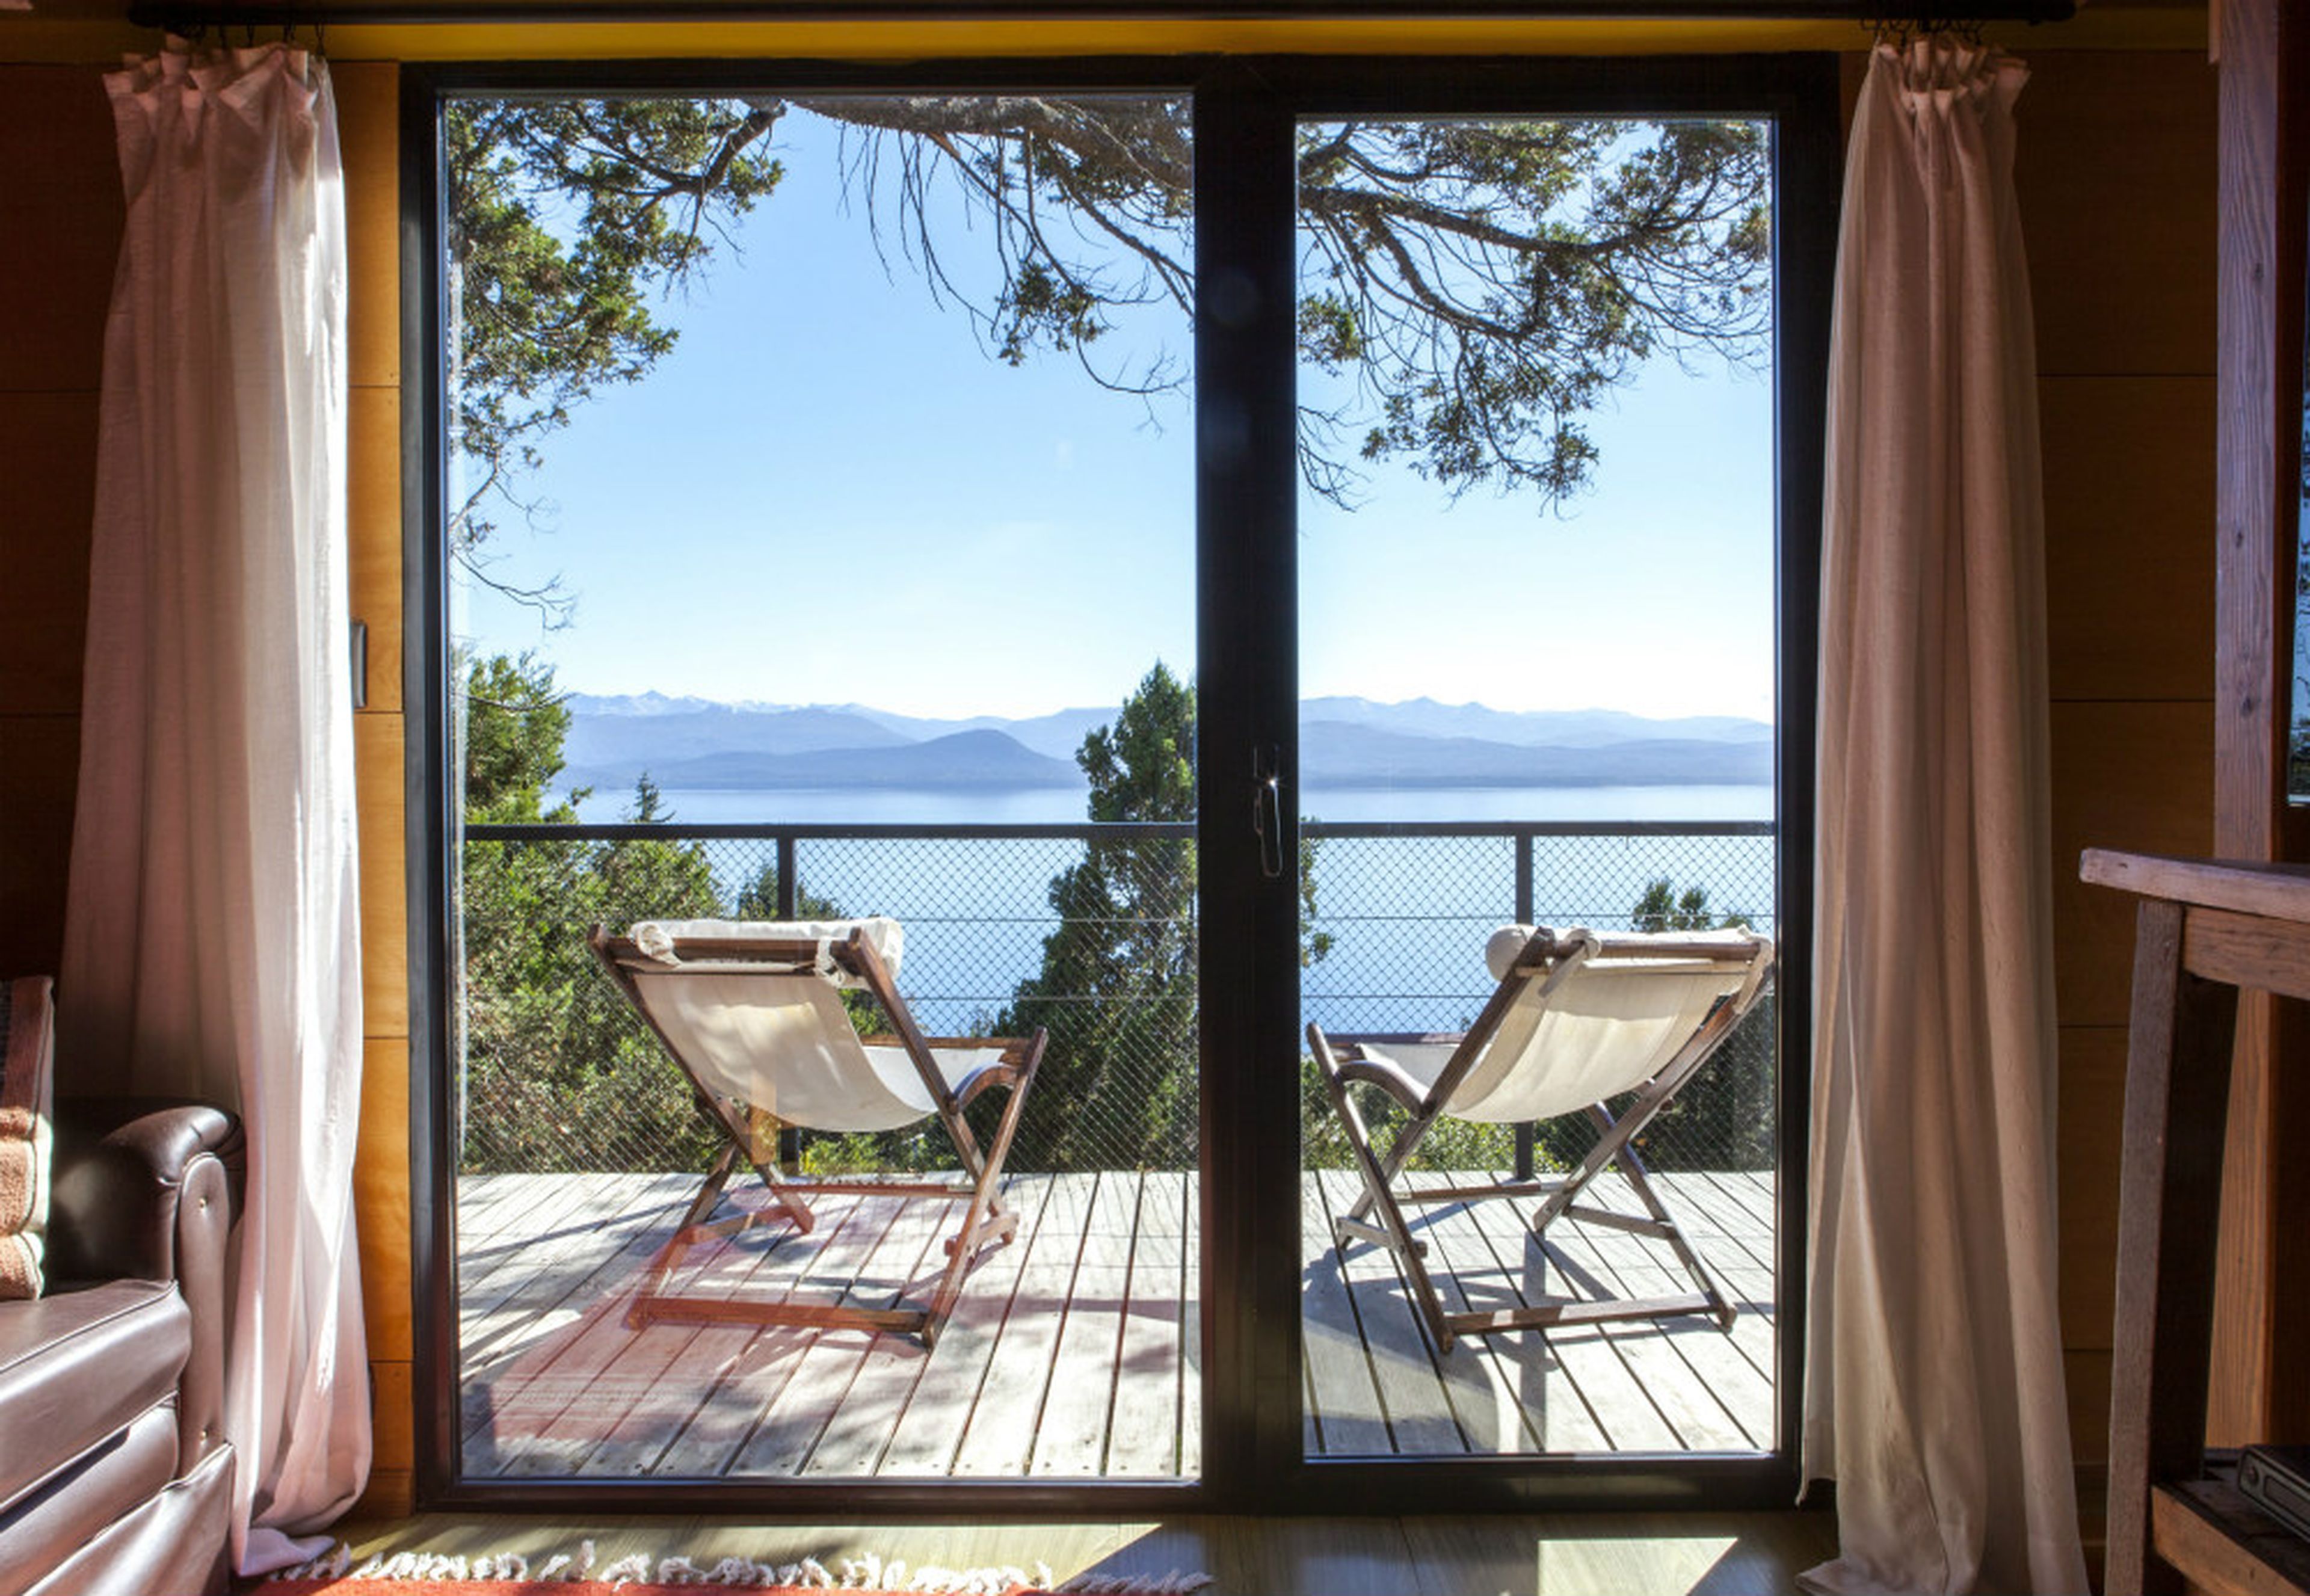 Vistas al lago desde una casa en alquiler en Airbnb en Argentina.